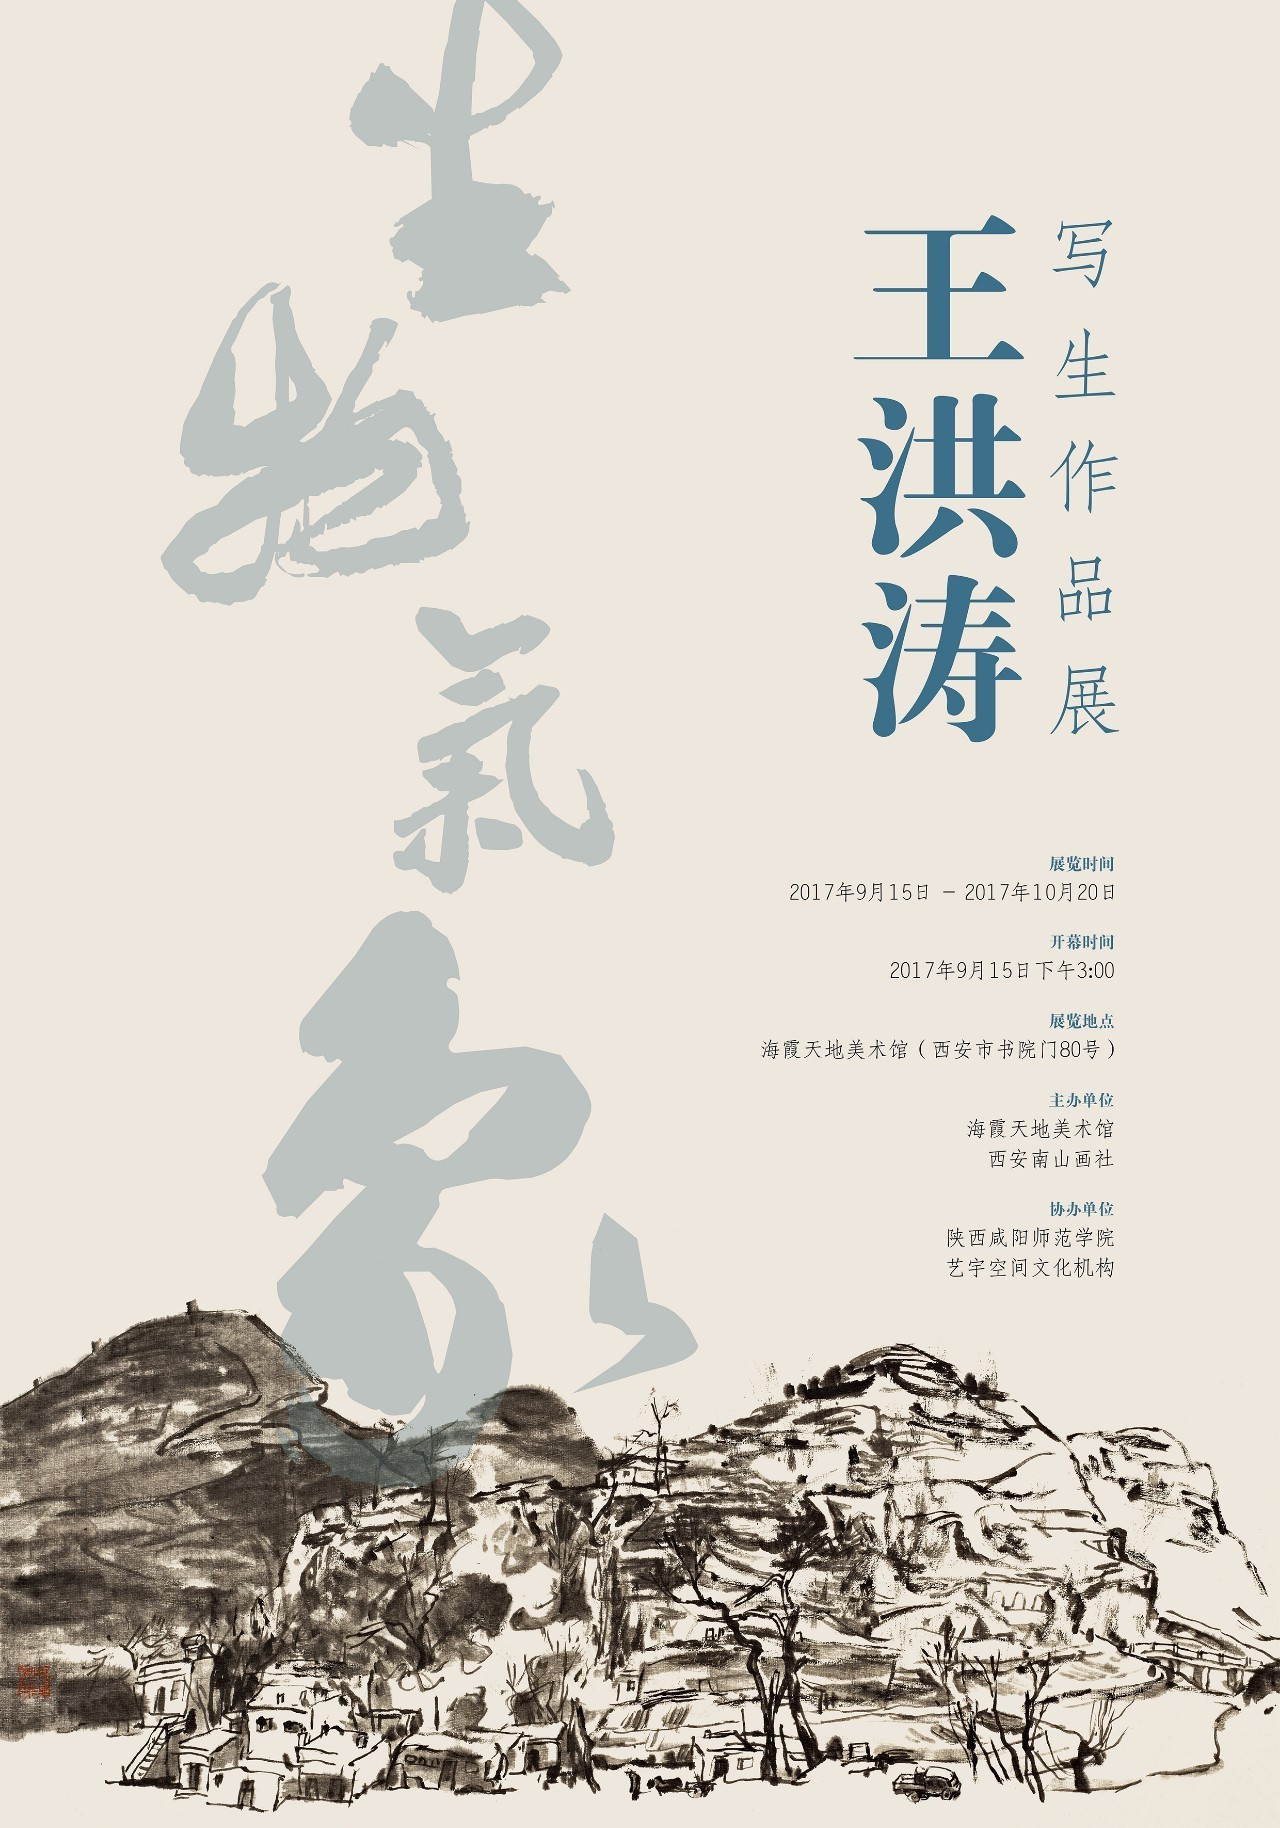 9月15日，王洪涛《生物万象》写生作品展在西安海霞天地美术馆开展